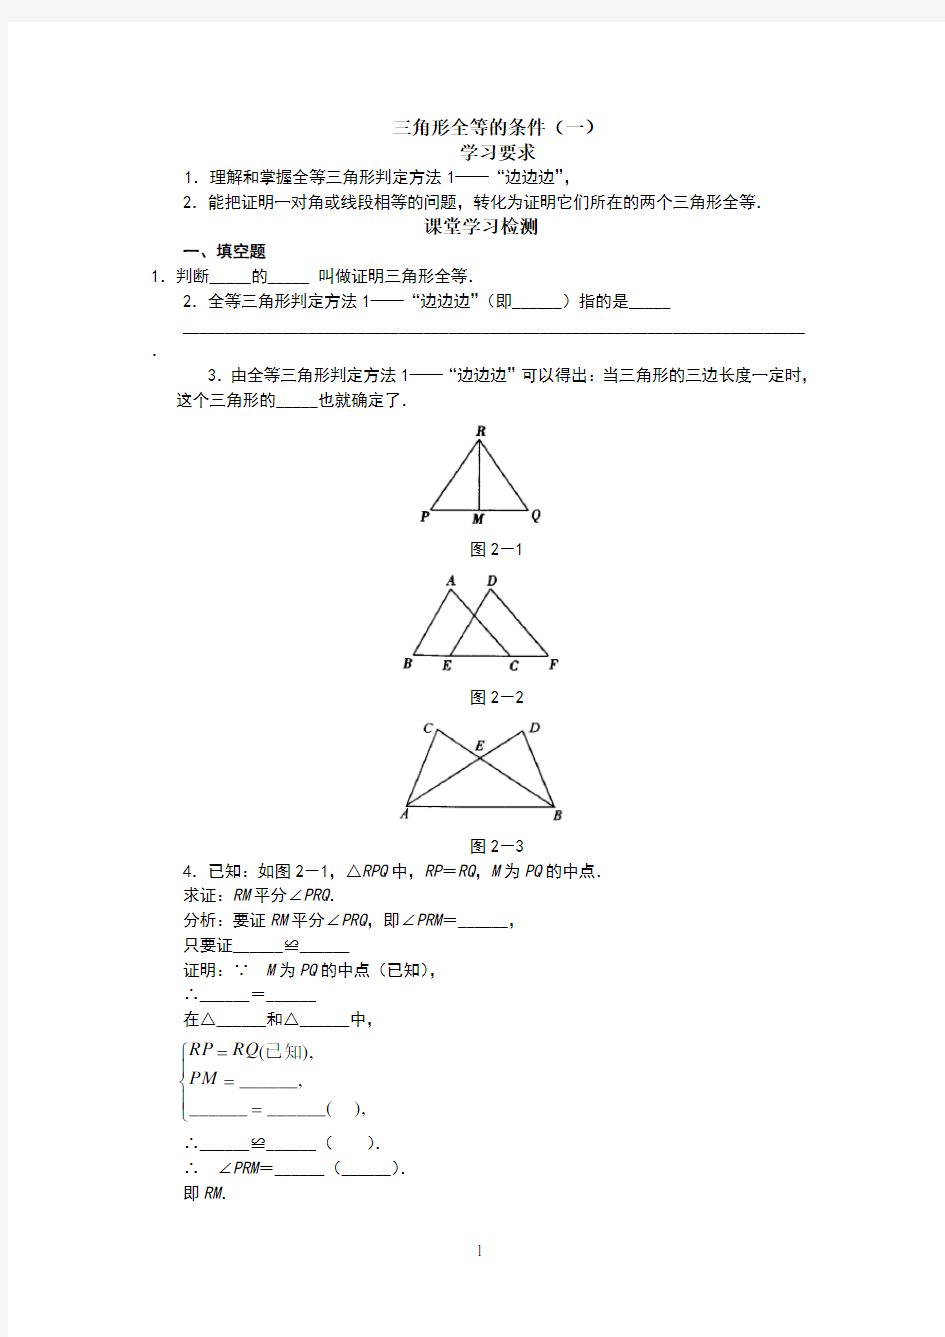 全等三角形判定方法四种方法”_